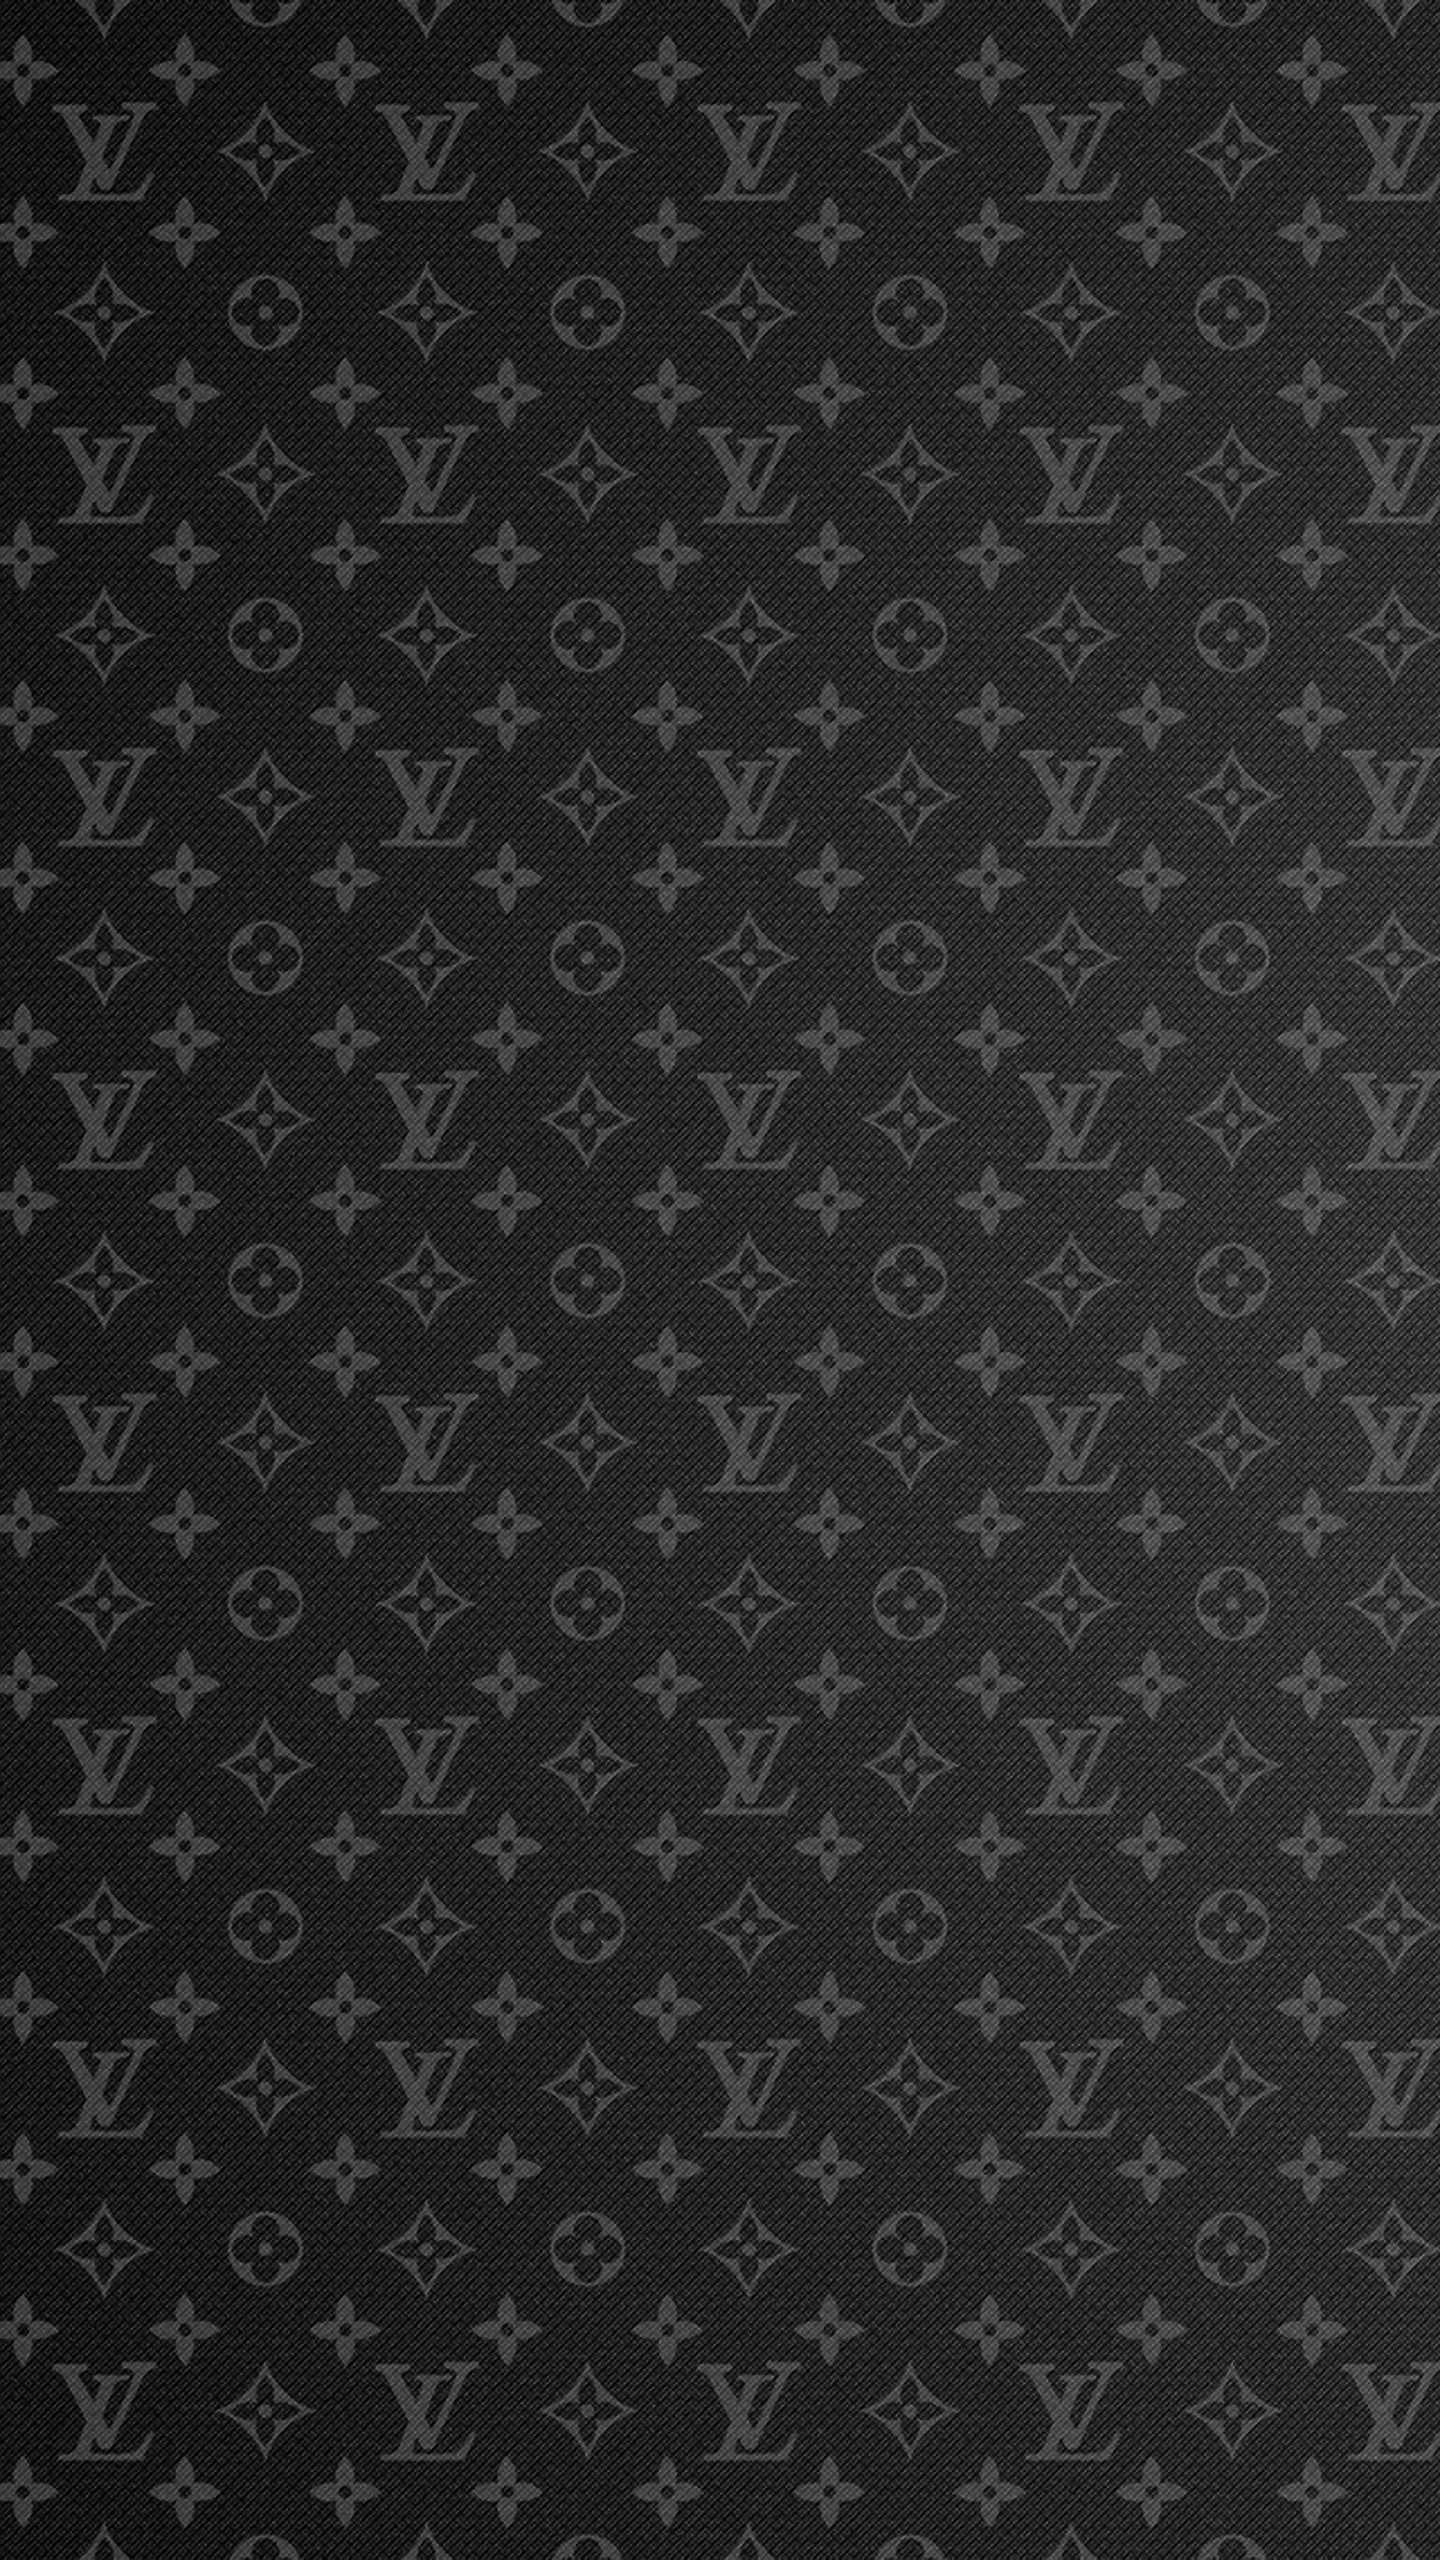 4K Lv Wallpaper - iXpap